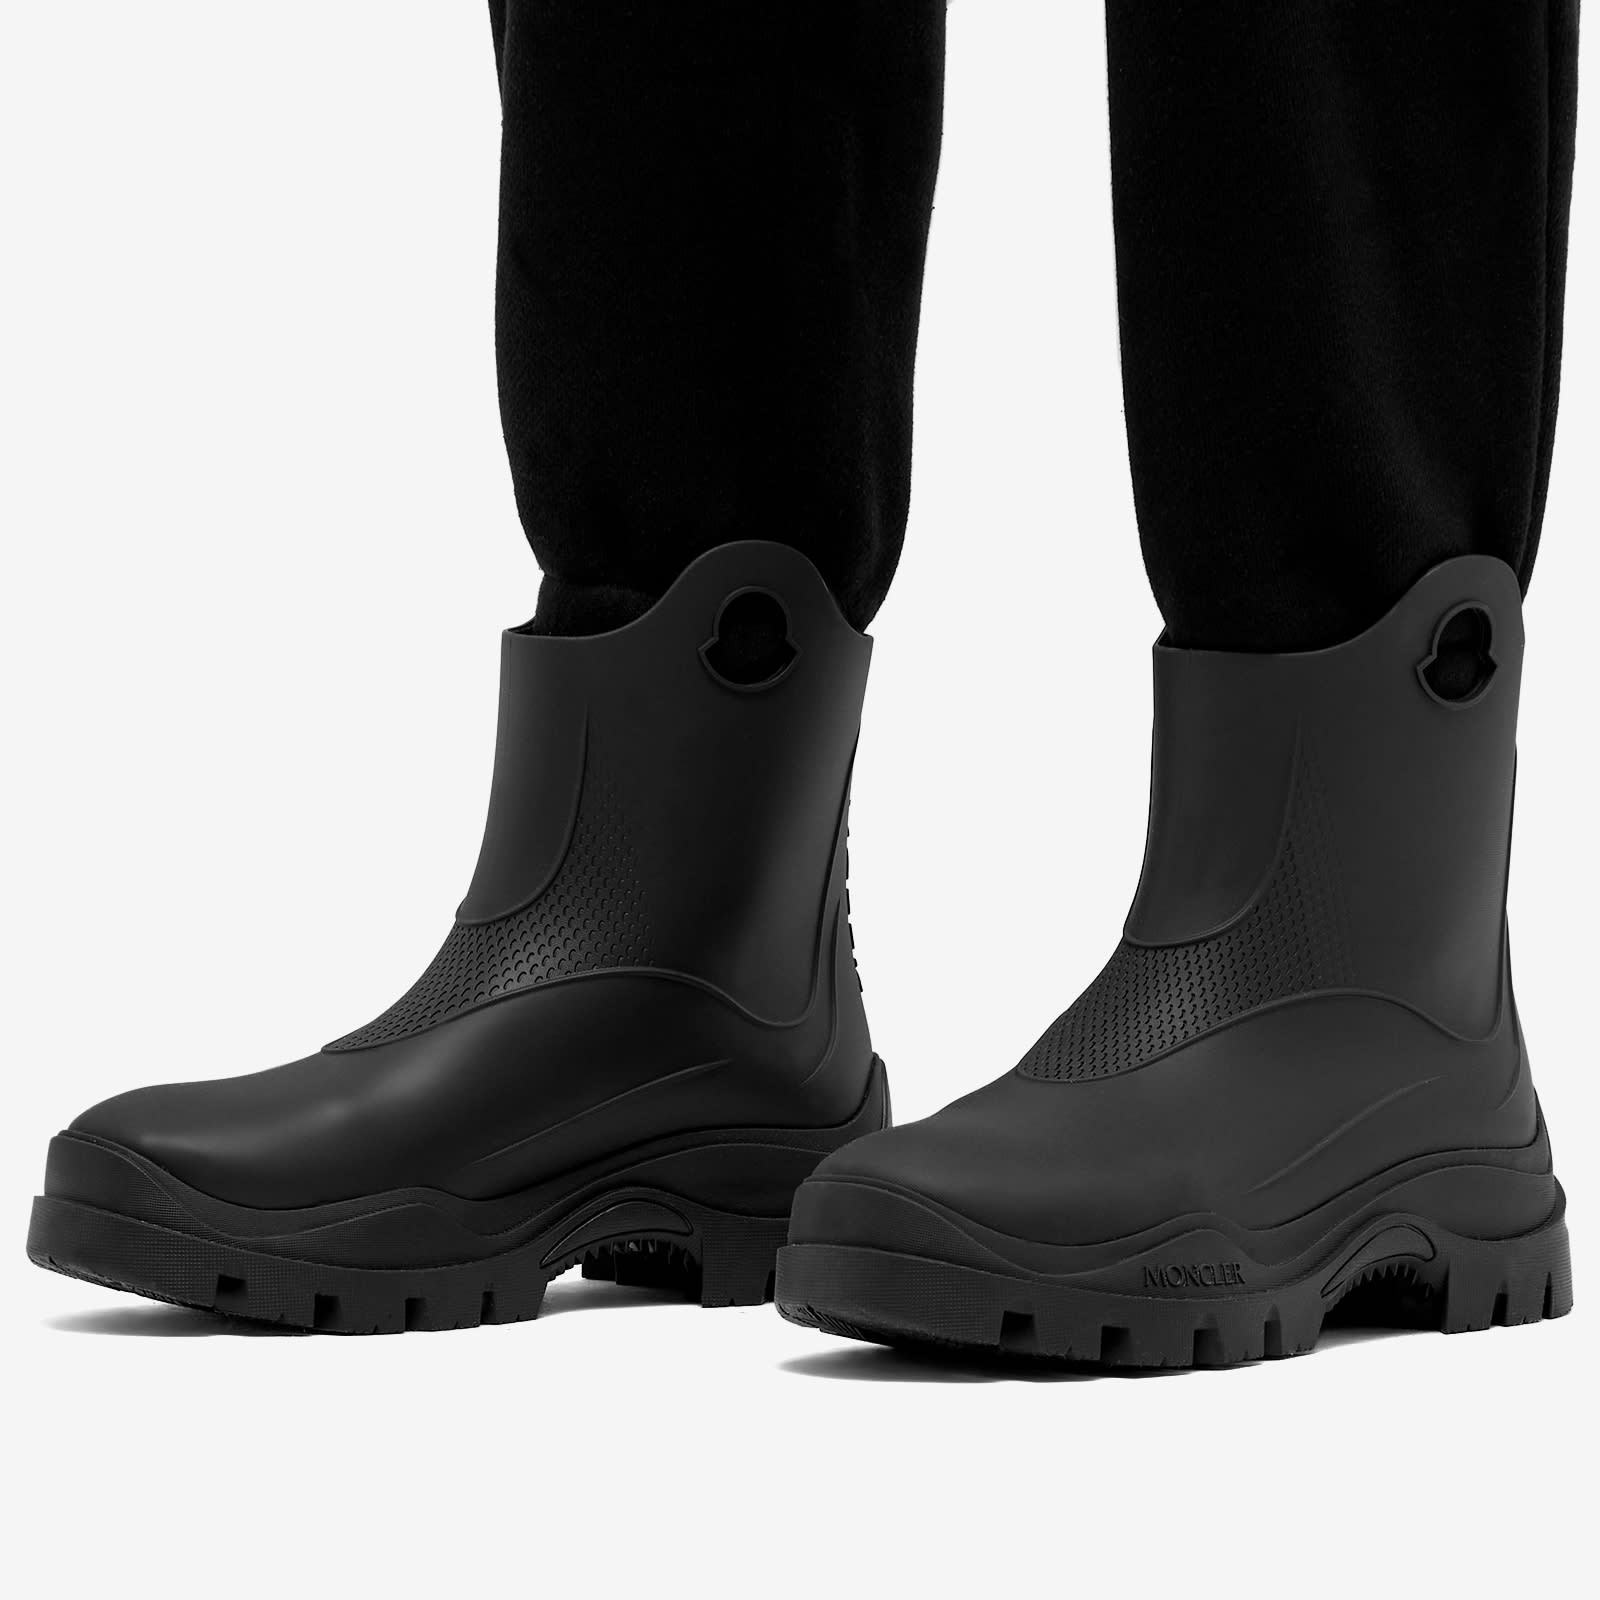 Moncler Misty Rain Boots - 6